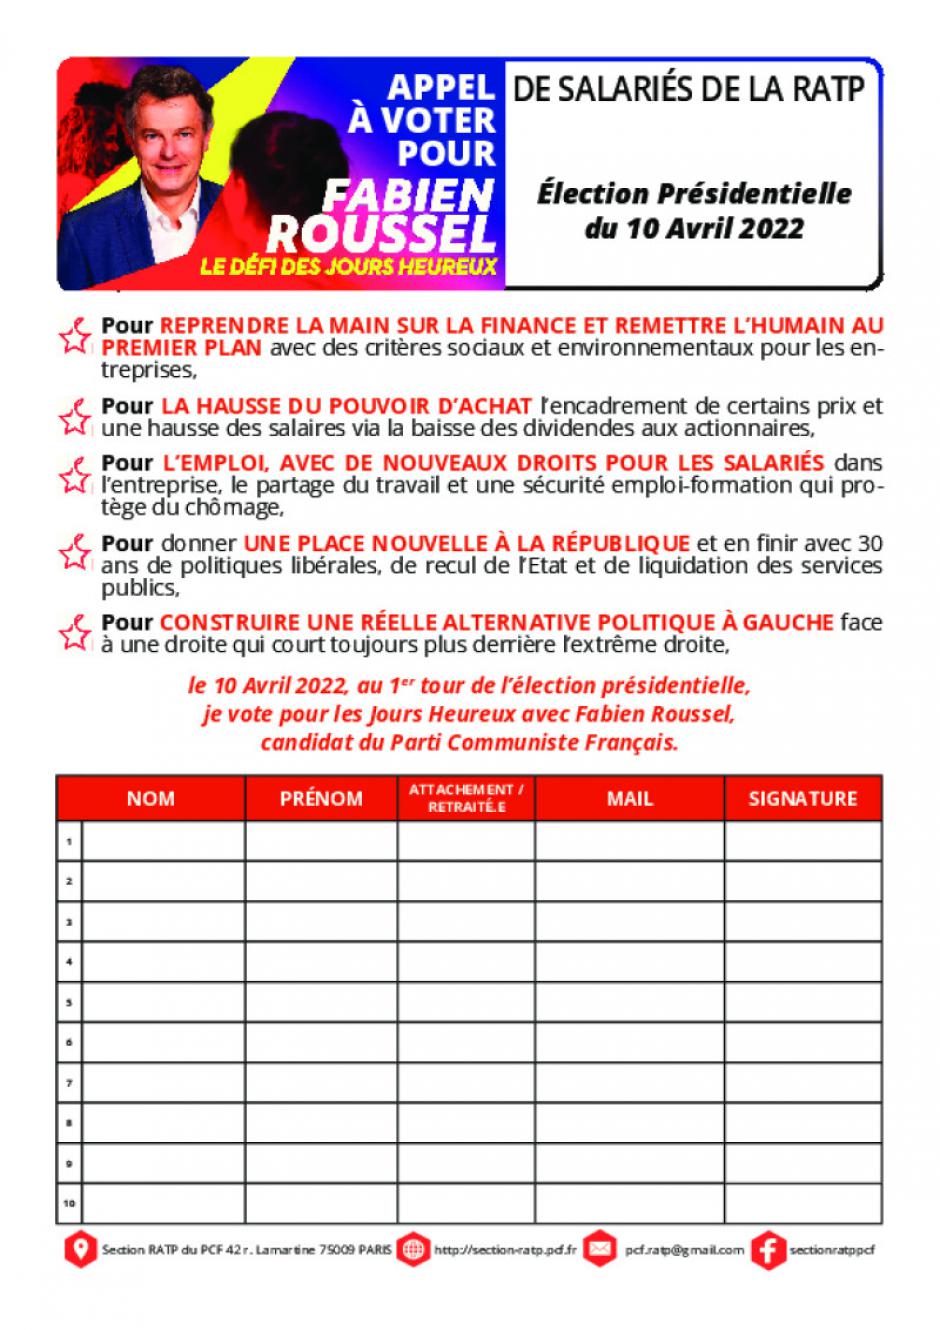 Signez l'appel à voter Fabien Roussel pour l'élection Présidentielle 2022